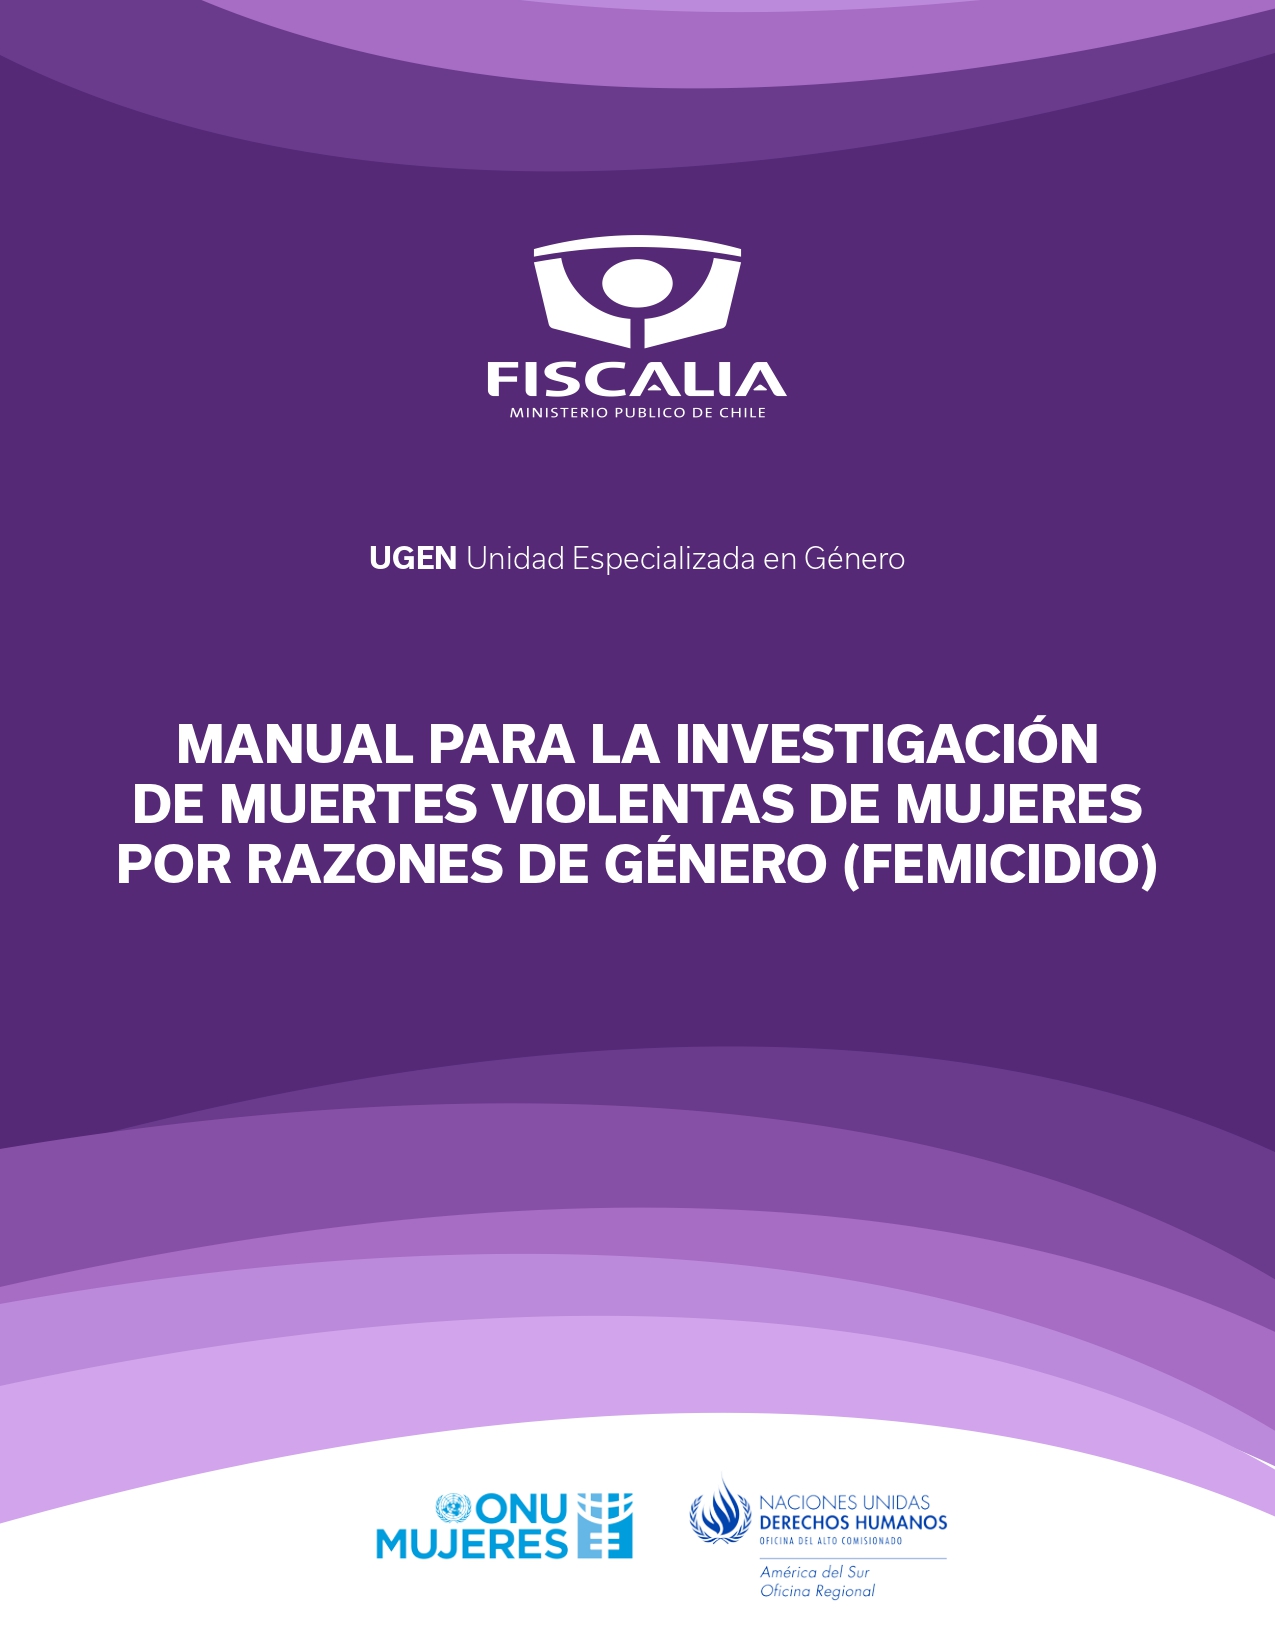 Manual para la investigación de muertes violentas de mujeres por razones de género